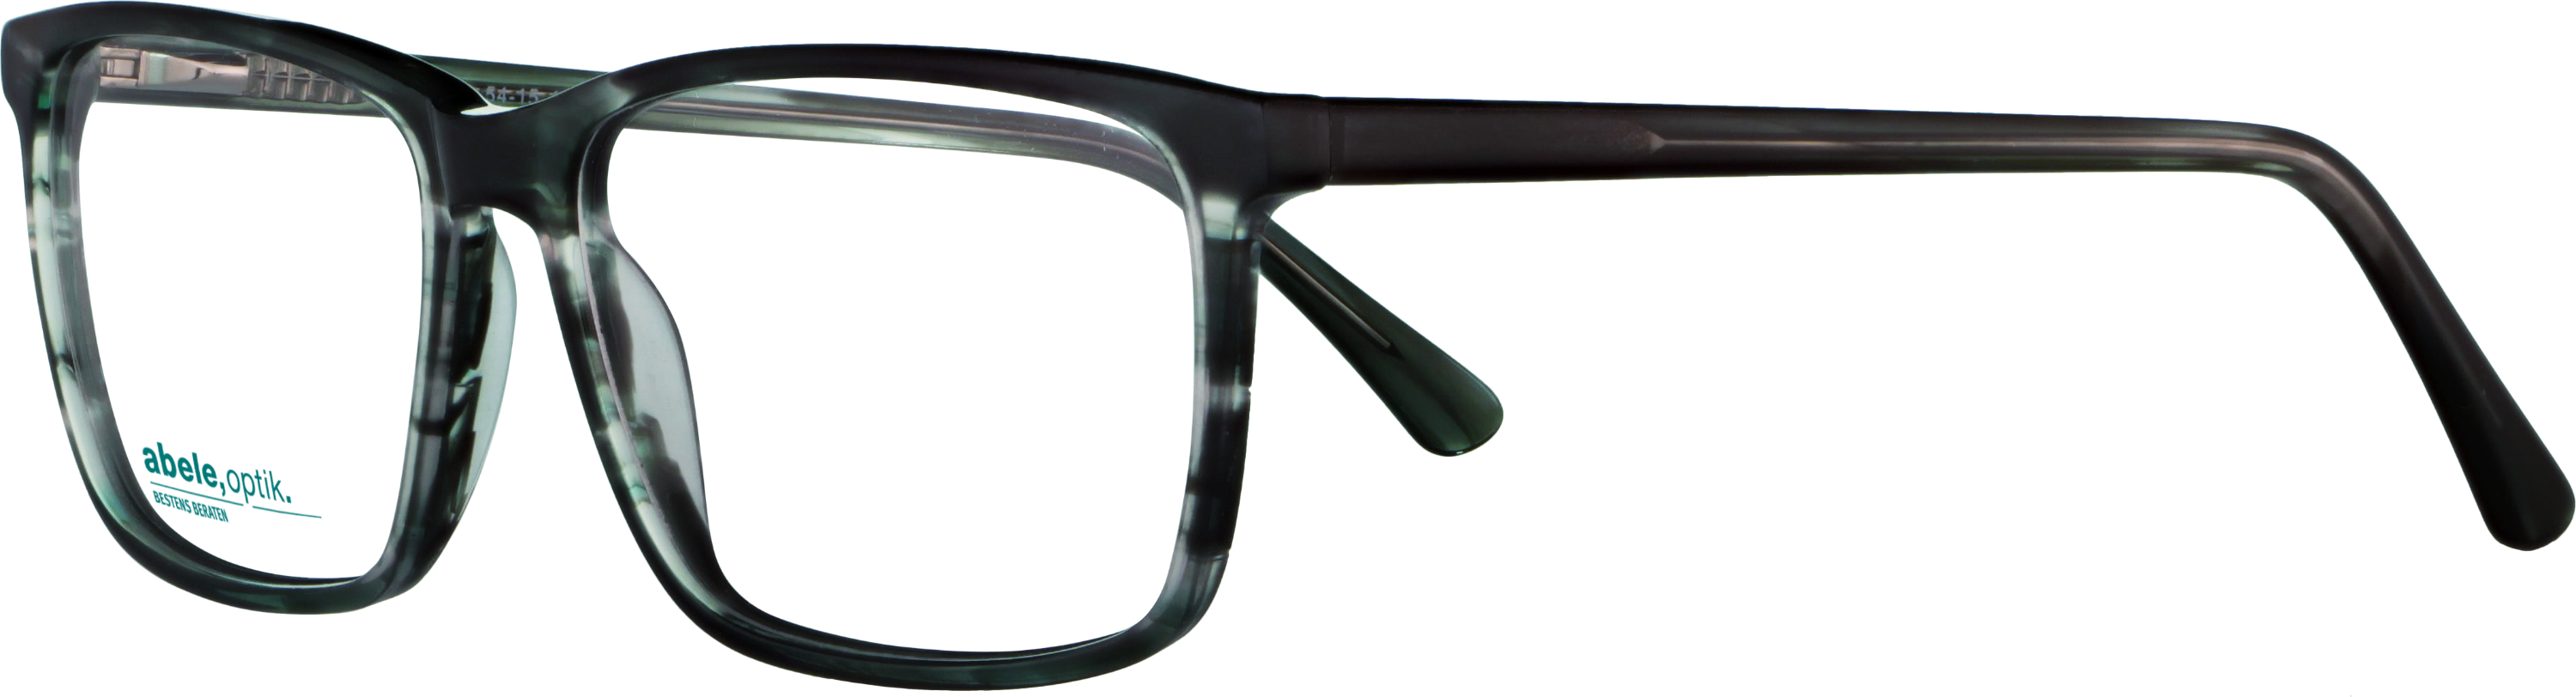 Das Bild zeigt die Korrektionsbrille 141681 von der Marke Abele Optik in dunkelgrau.